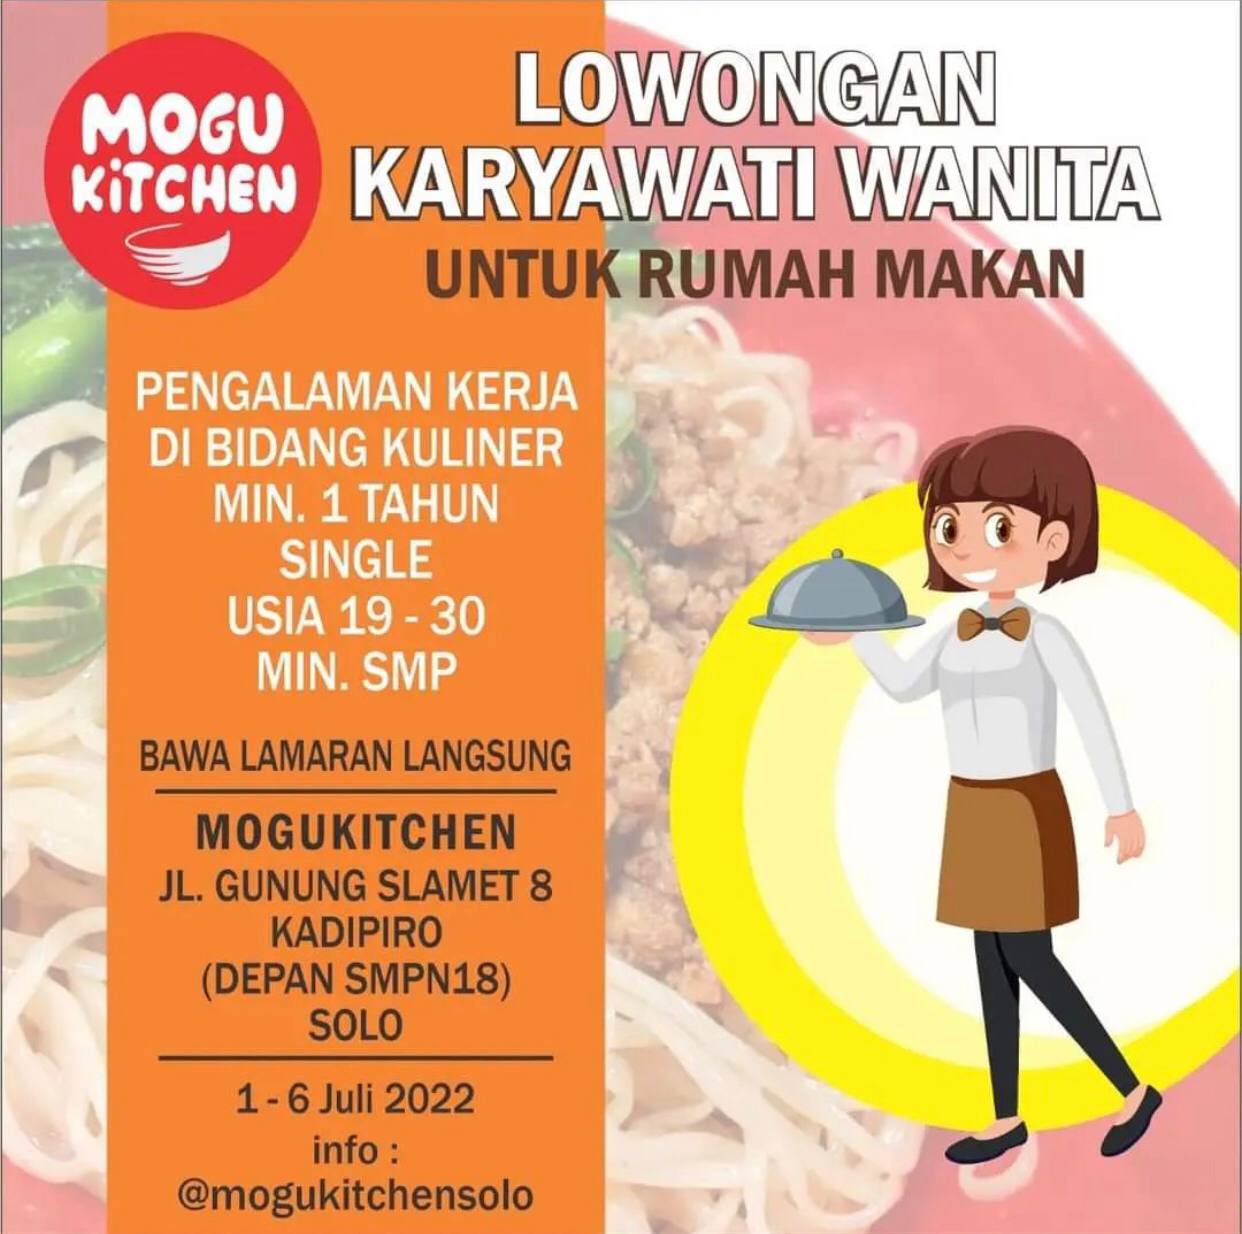 Lowongan Kerja Karyawati Wanita Rumah Makan di Mogu Kitchen Solo